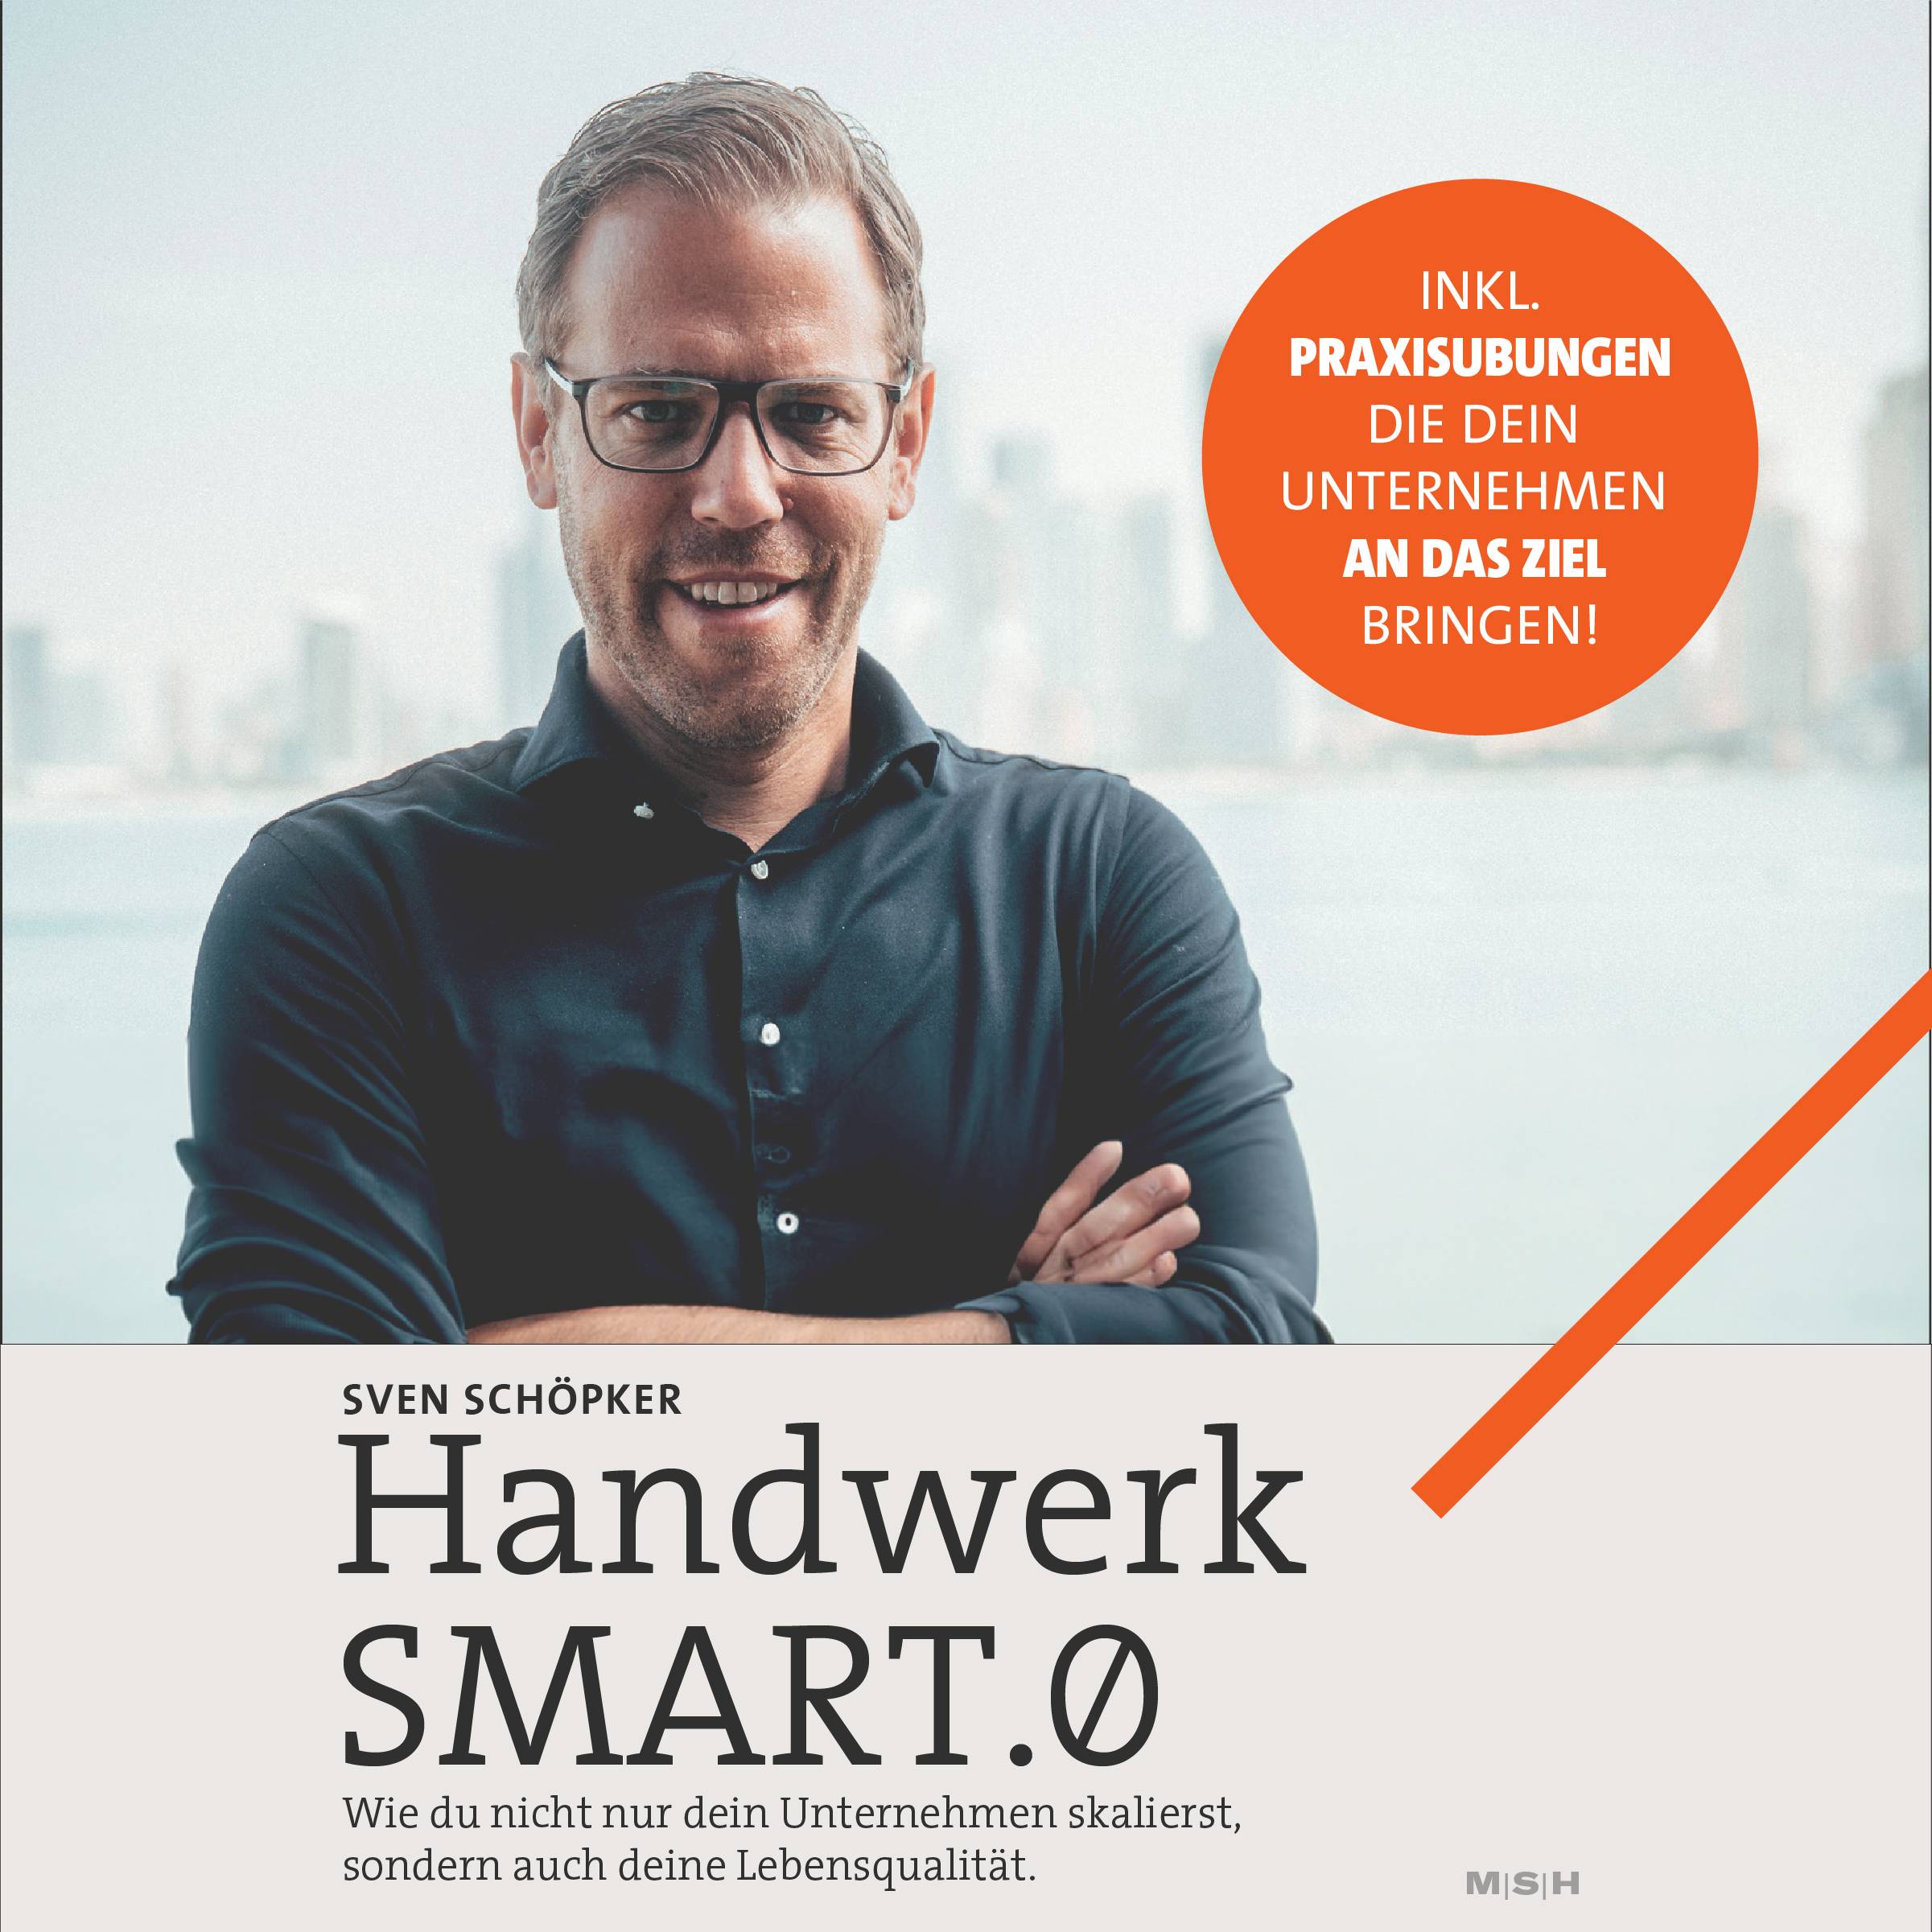 Sven Schöpker Handwerk Smart.0 auf Audible . Ein neues Hörbuch von Christian Gera auf Audible